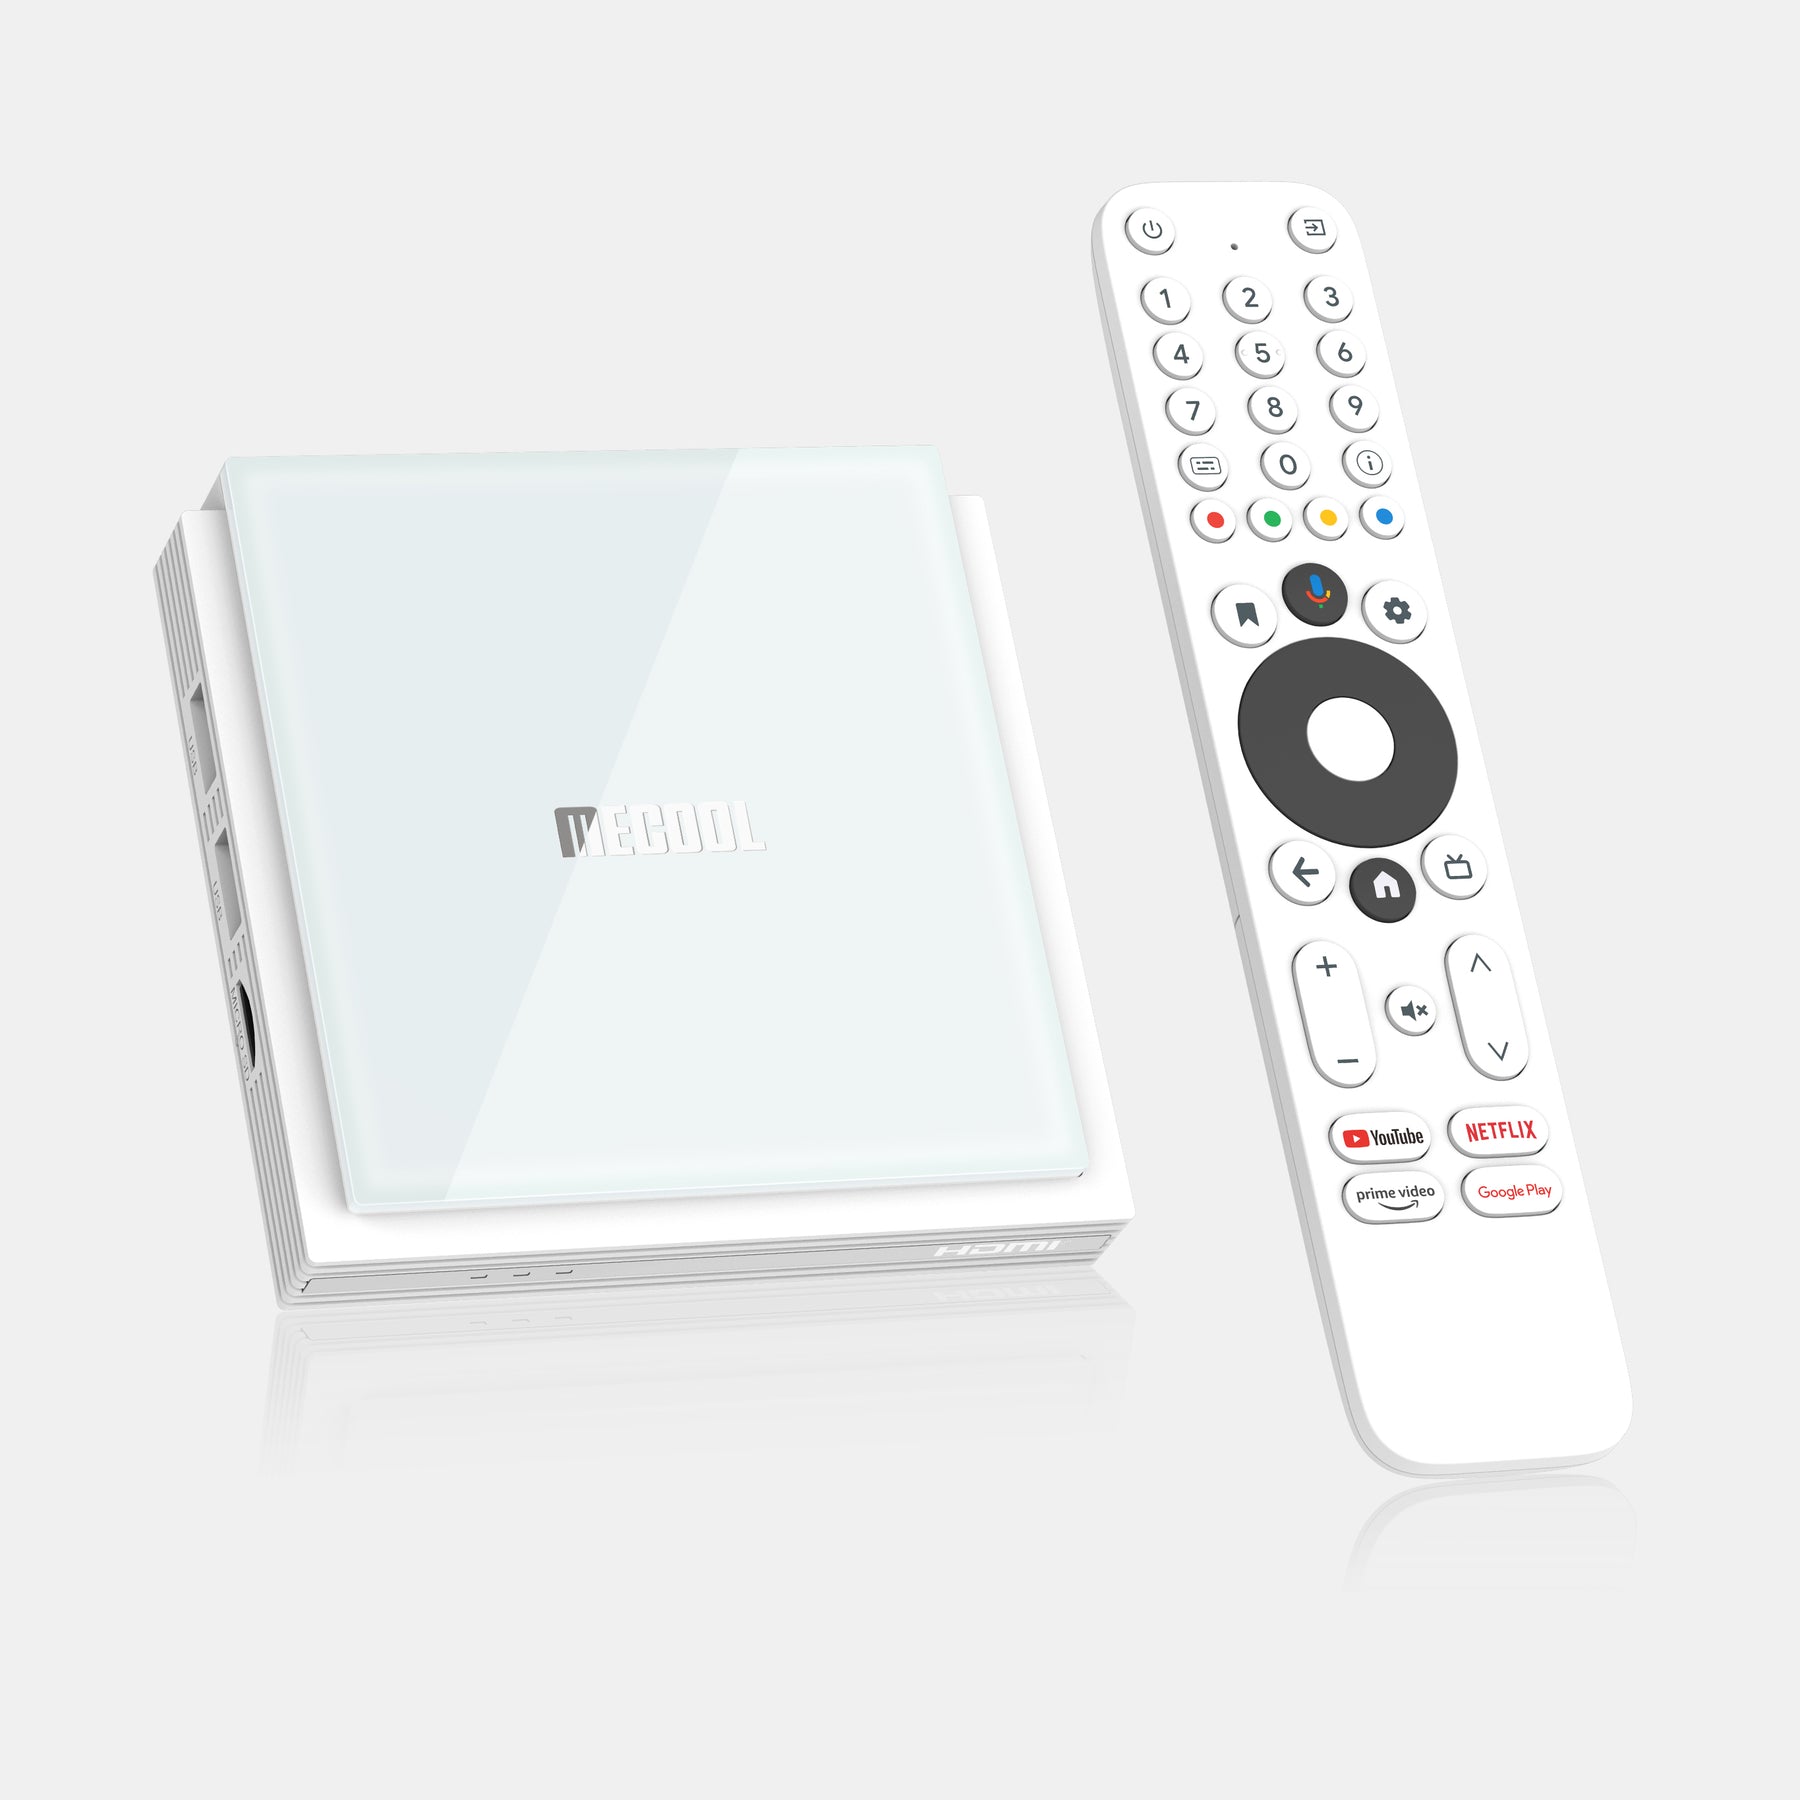 Review del MECOOL KM2 Plus Deluxe: un TV Box con 4K recomendable